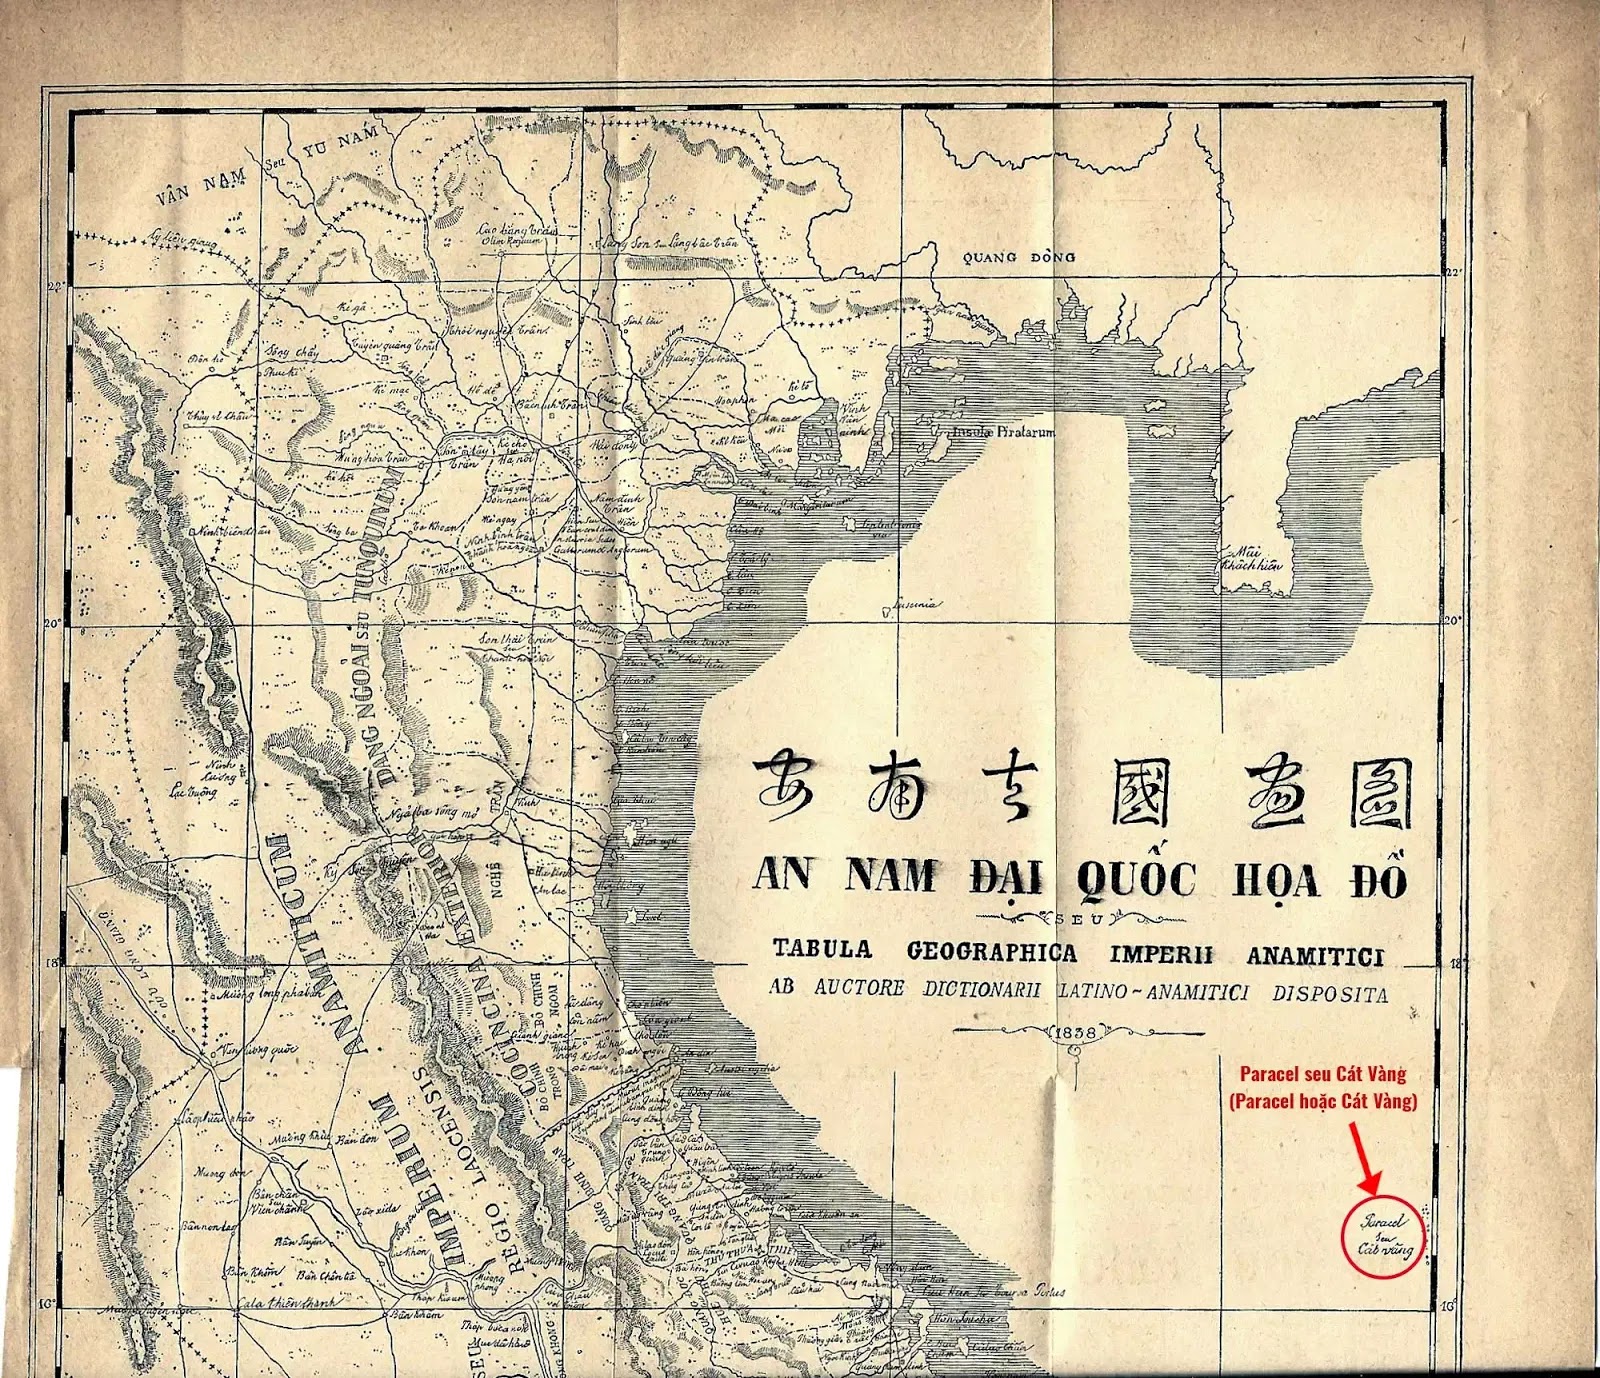 Dòng chữ “Paracel seu Cát Vàng” (Paracel hoặc Cát Vàng) trên tấm bản đồ. Paracels, hay Pracel, tức là Hoàng Sa - Cồn Vàng, thuộc về Cochinchina (tức Đàng Trong)".